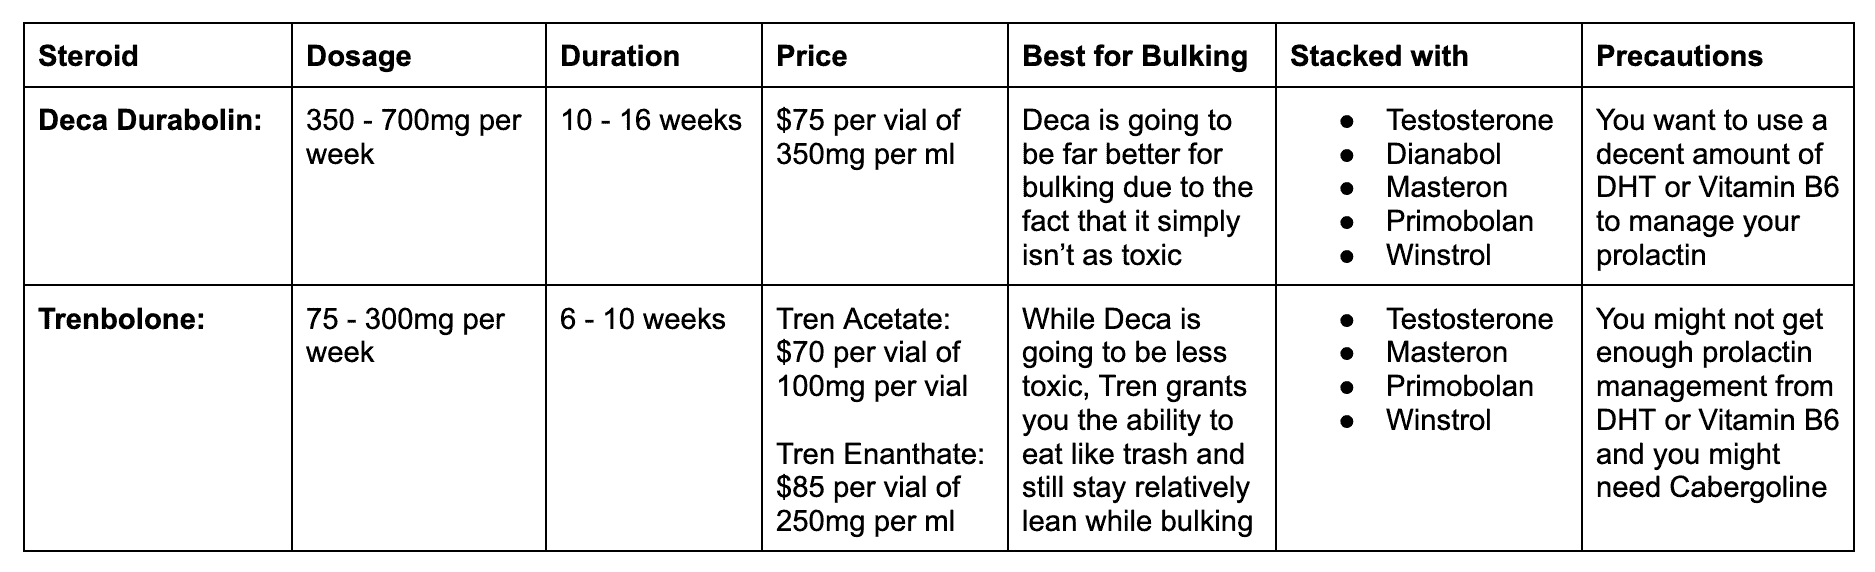 Deca vs Tren comparison table